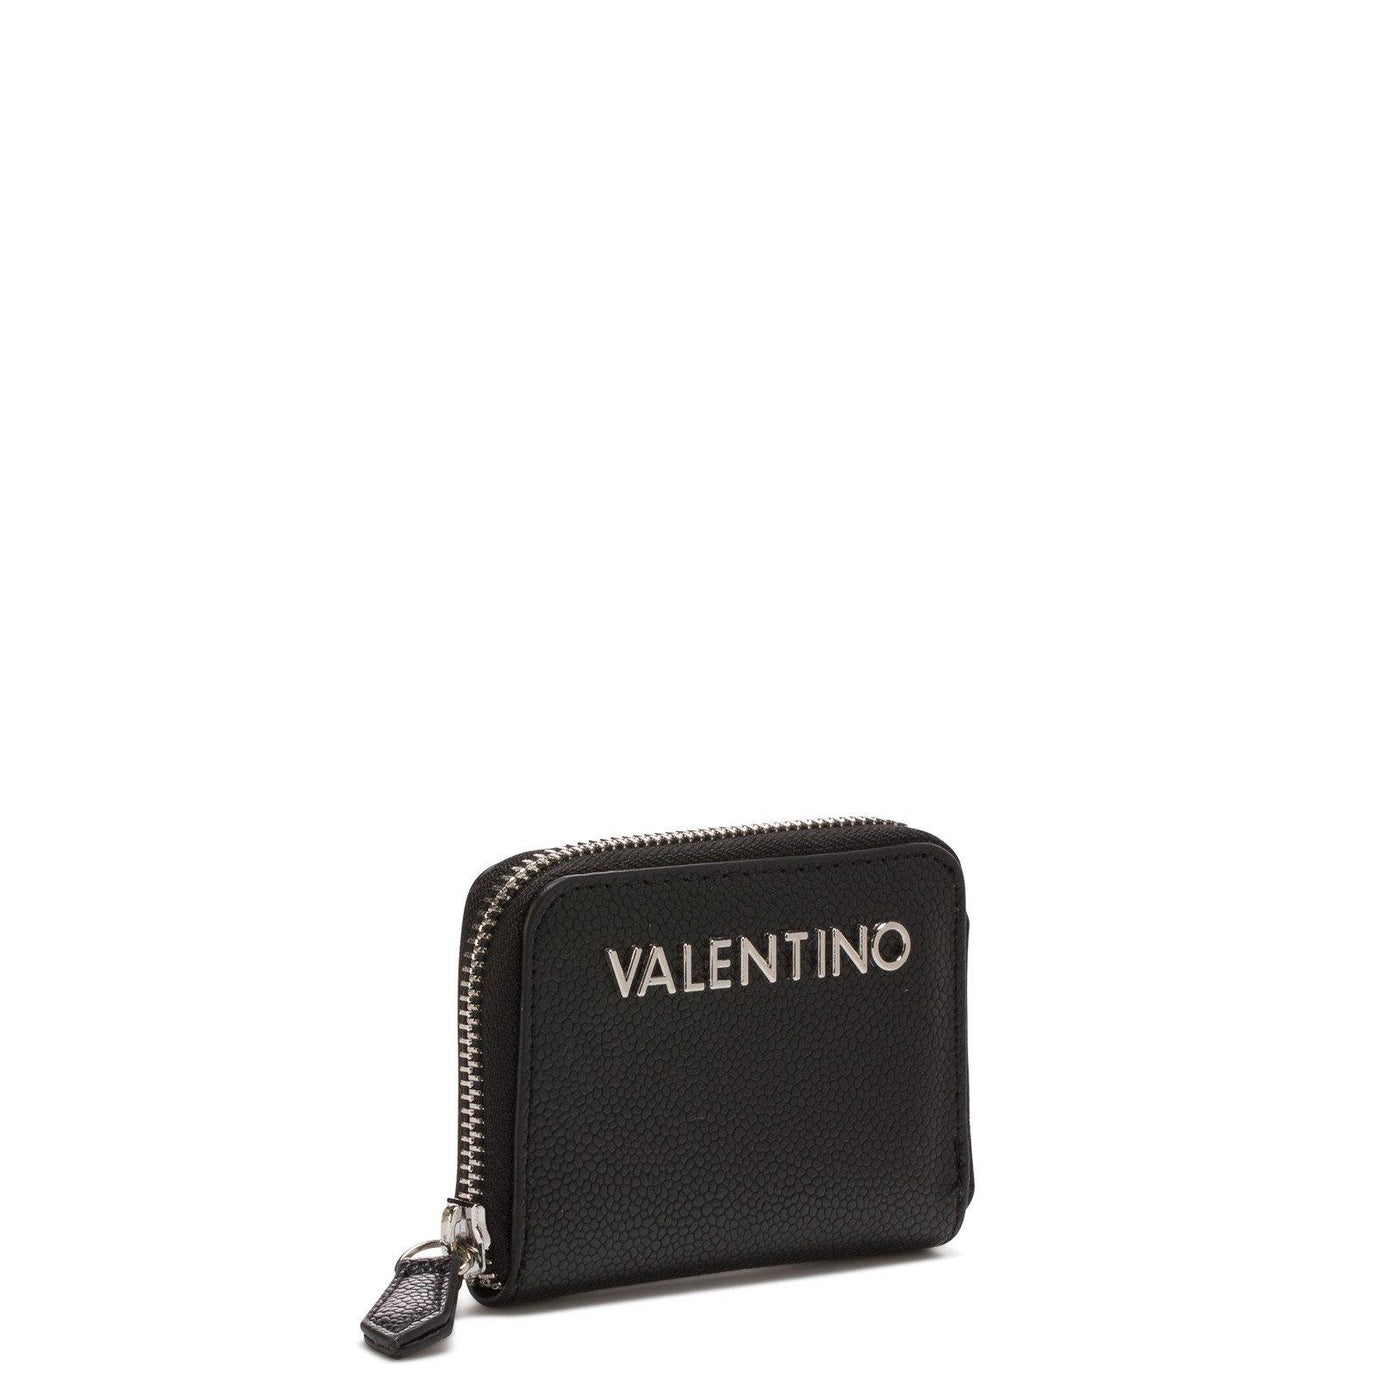 Porte monnaie / billet Valentino Noir